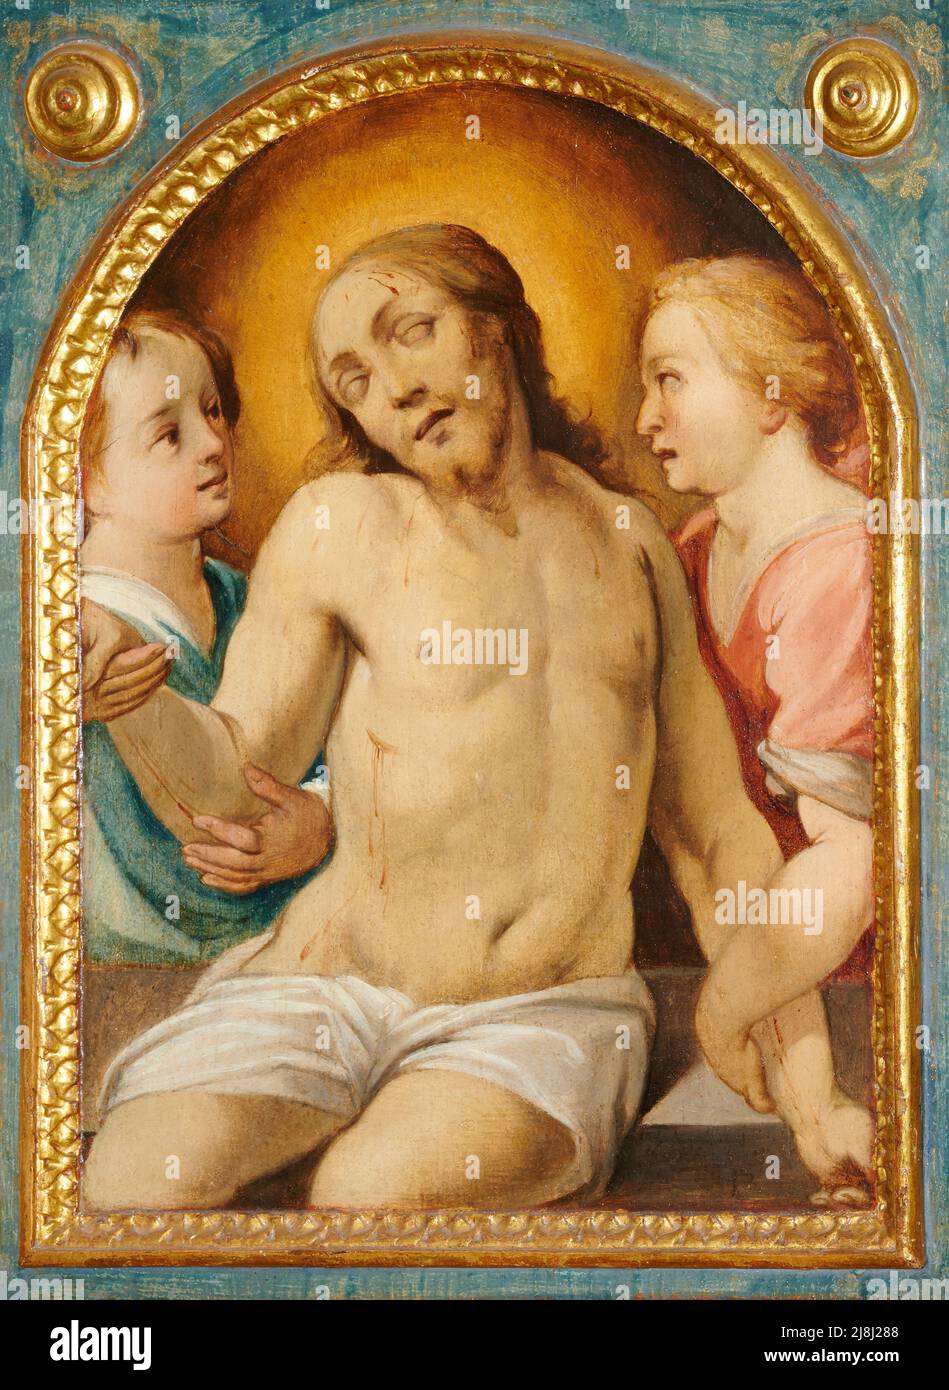 Cristo in pietà sorretto da due angeli  - testata di bara, olio su tavola - Simondio Salimbeni  - prima metà del XVII secolo - Buonconvento (Si),Itali Stock Photo